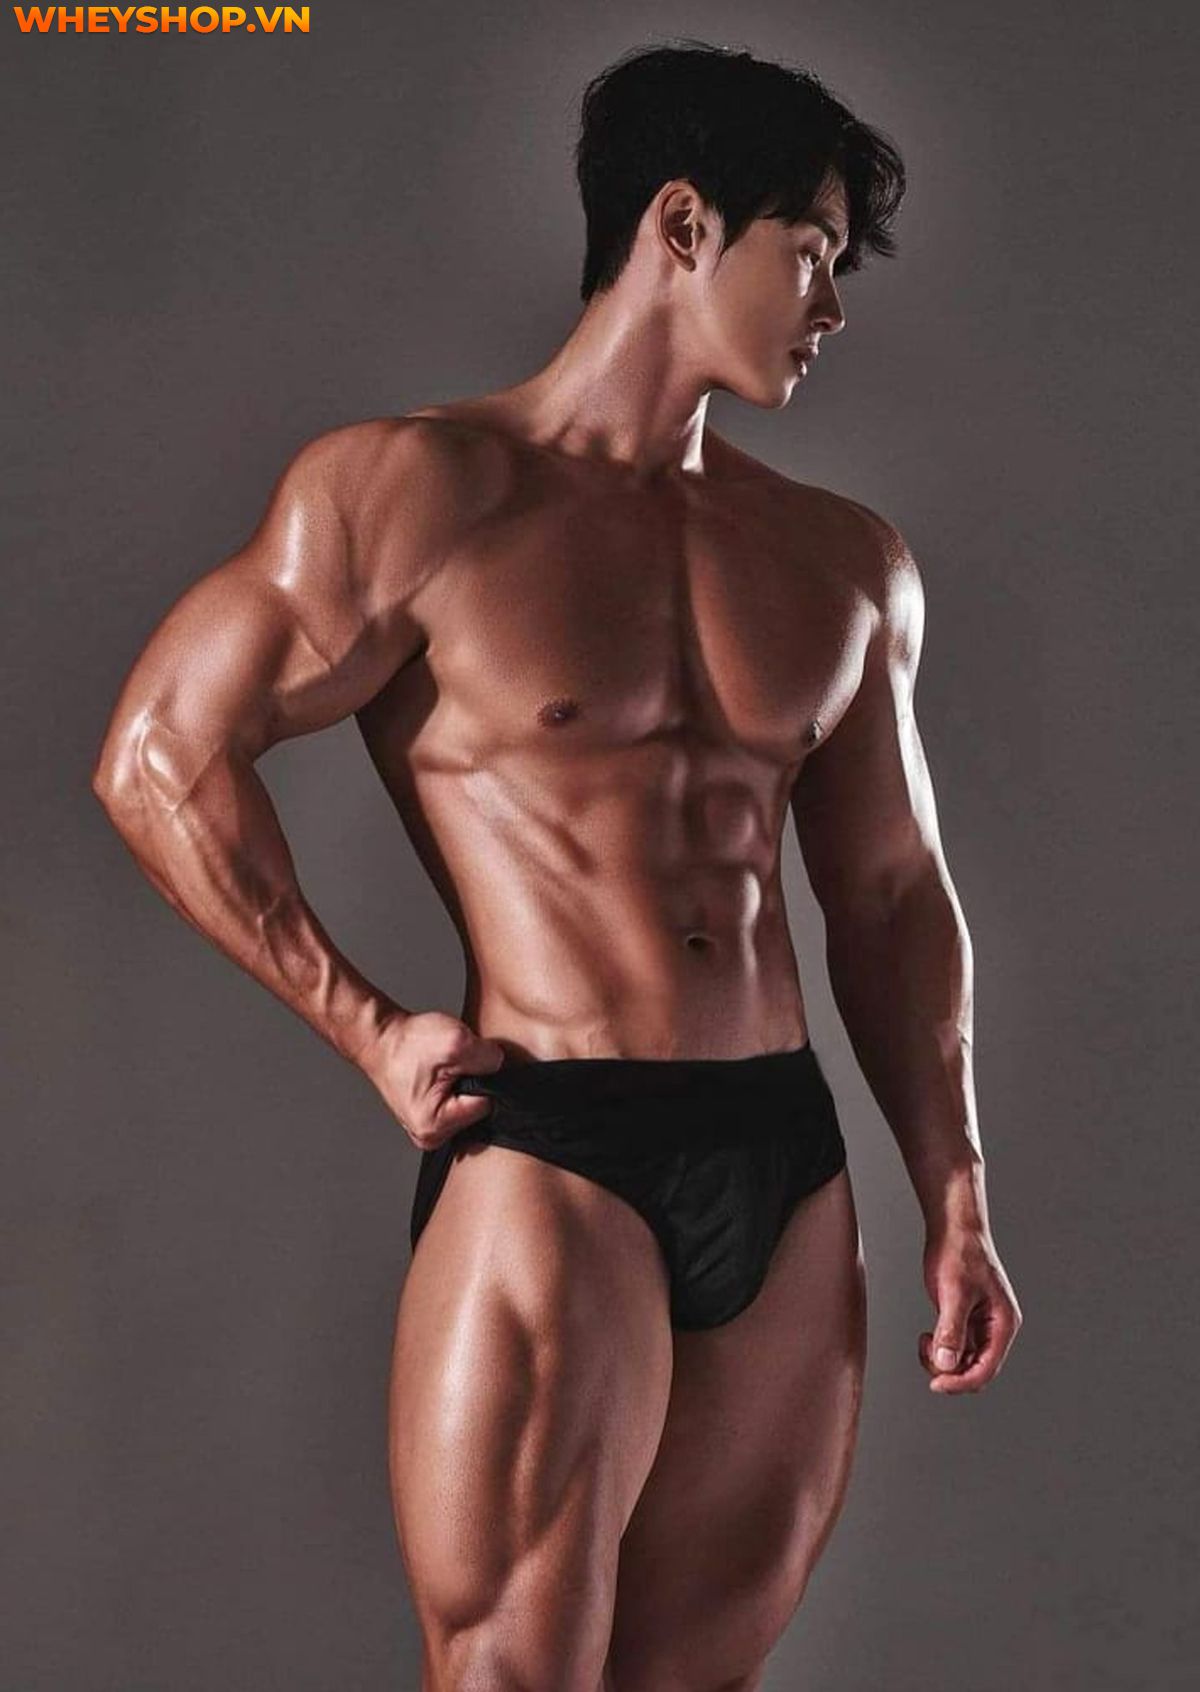 Body nam đẹp chuẩn nhất hiện nay có tỷ lệ như thế nào? Hãy cùng WheyShop khám phá 1001+ hình ảnh body nam đẹp nhất thế giới qua bài viết...